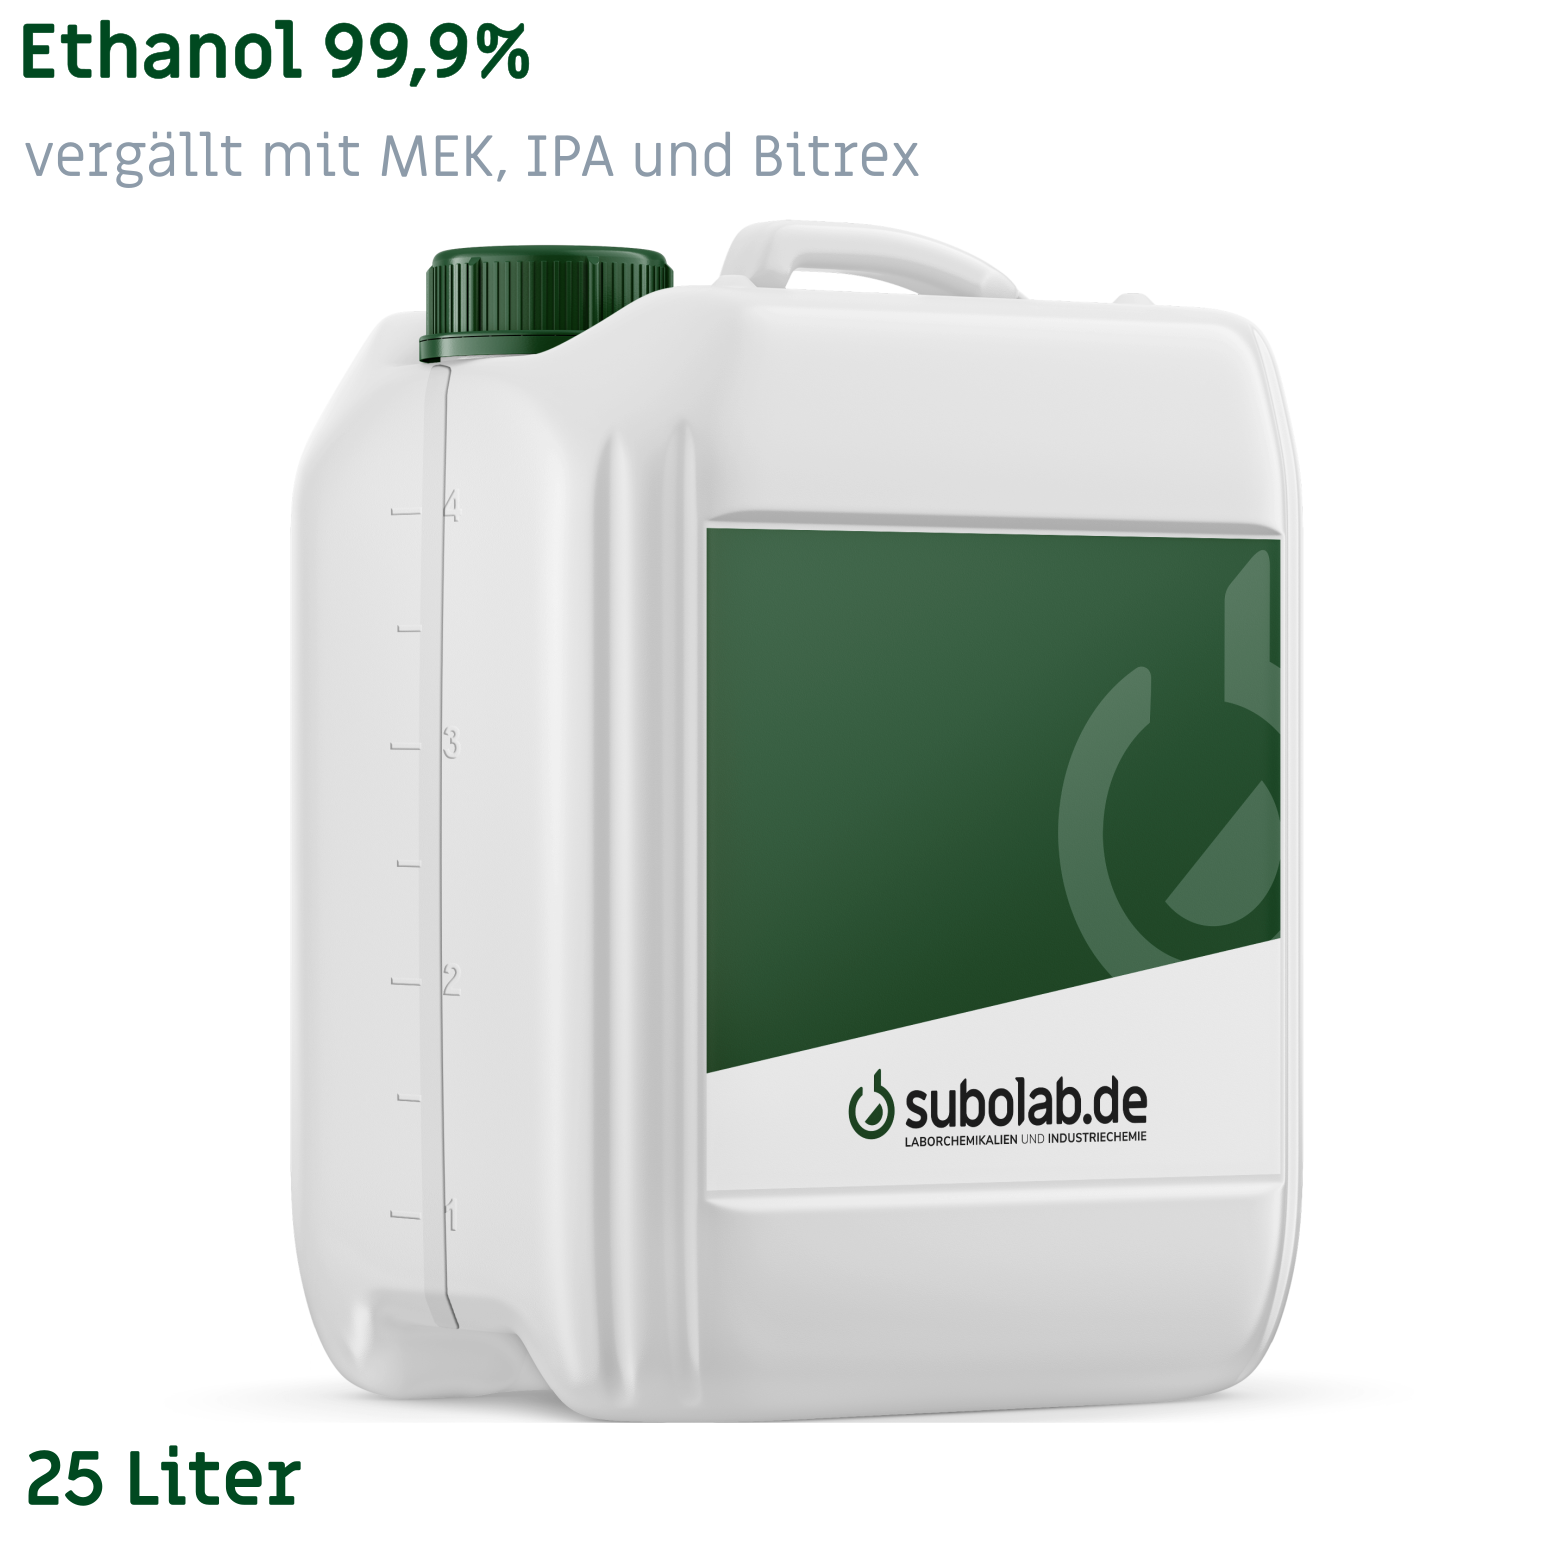 Bild von Ethanol 99,9% vergällt mit MEK, IPA und Bitrex (25 Liter)